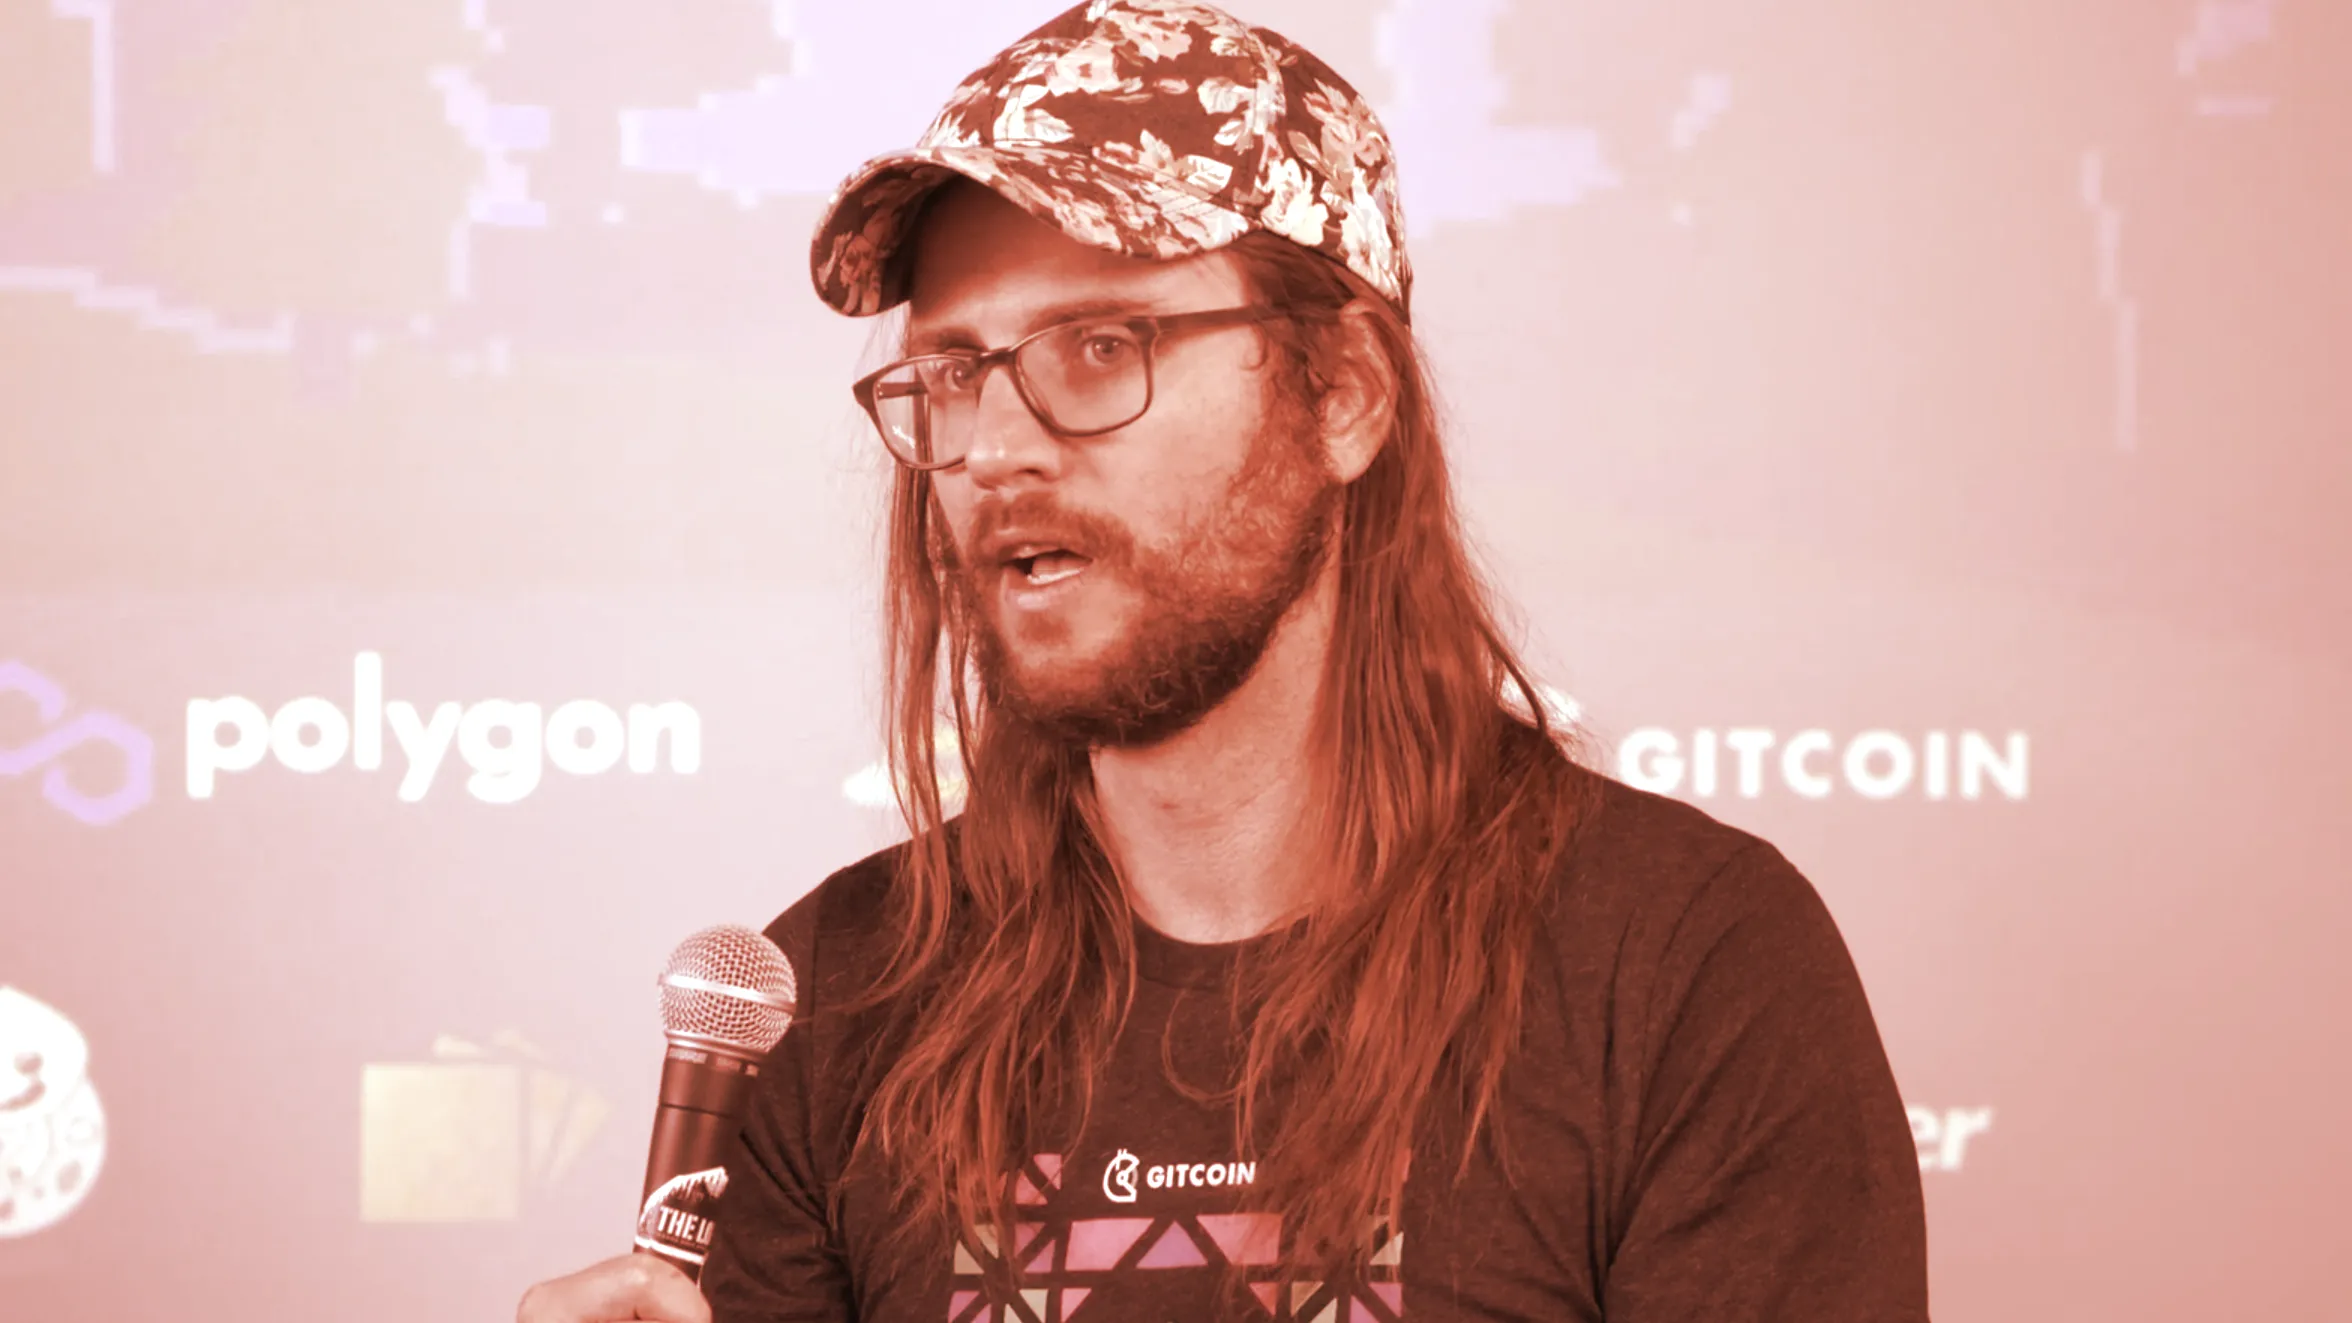 Gitcoin Founder Kevin Owocki. Image: MCON 2021